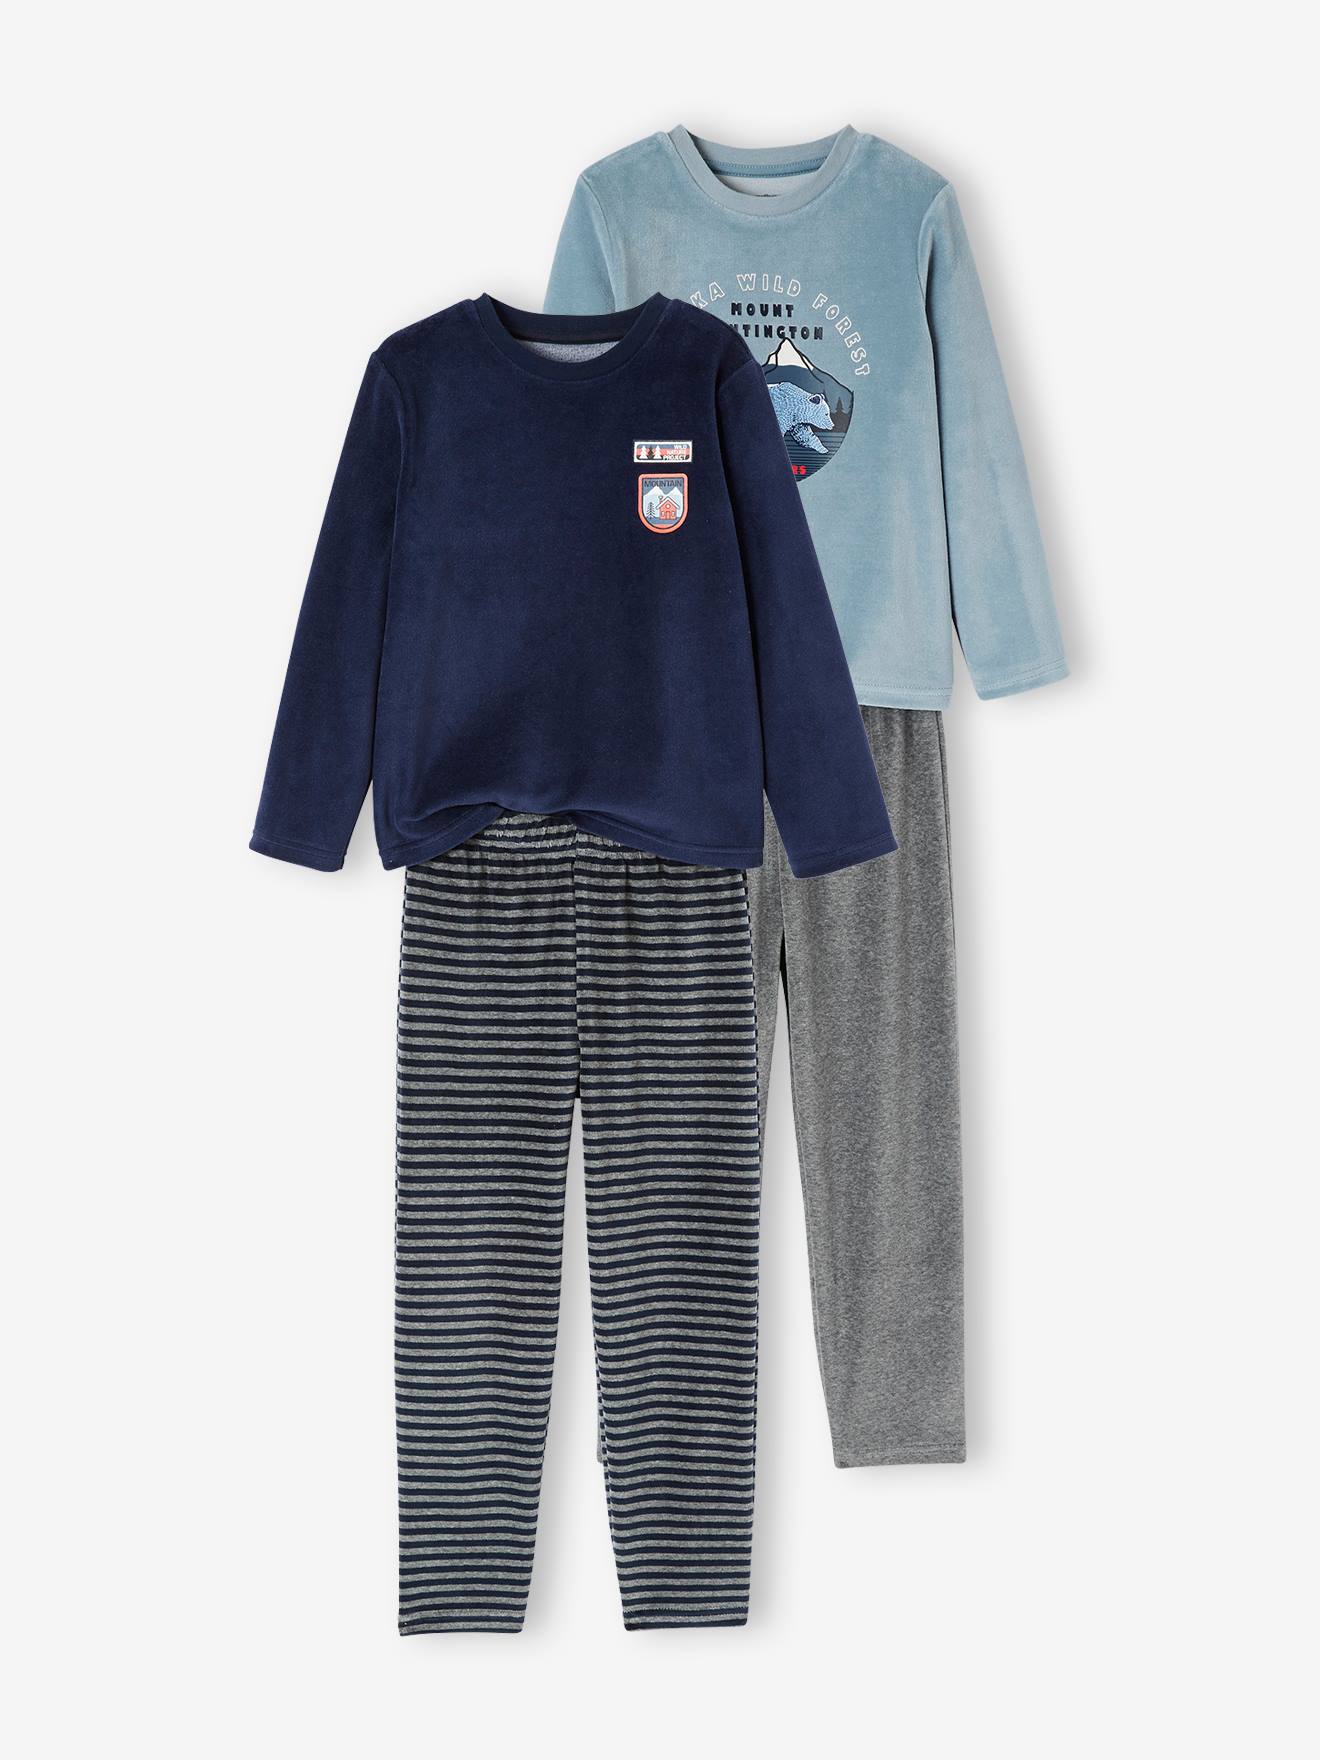 Lot de 2 pyjamas nature en velours garçon BASICS lot bleu et gris